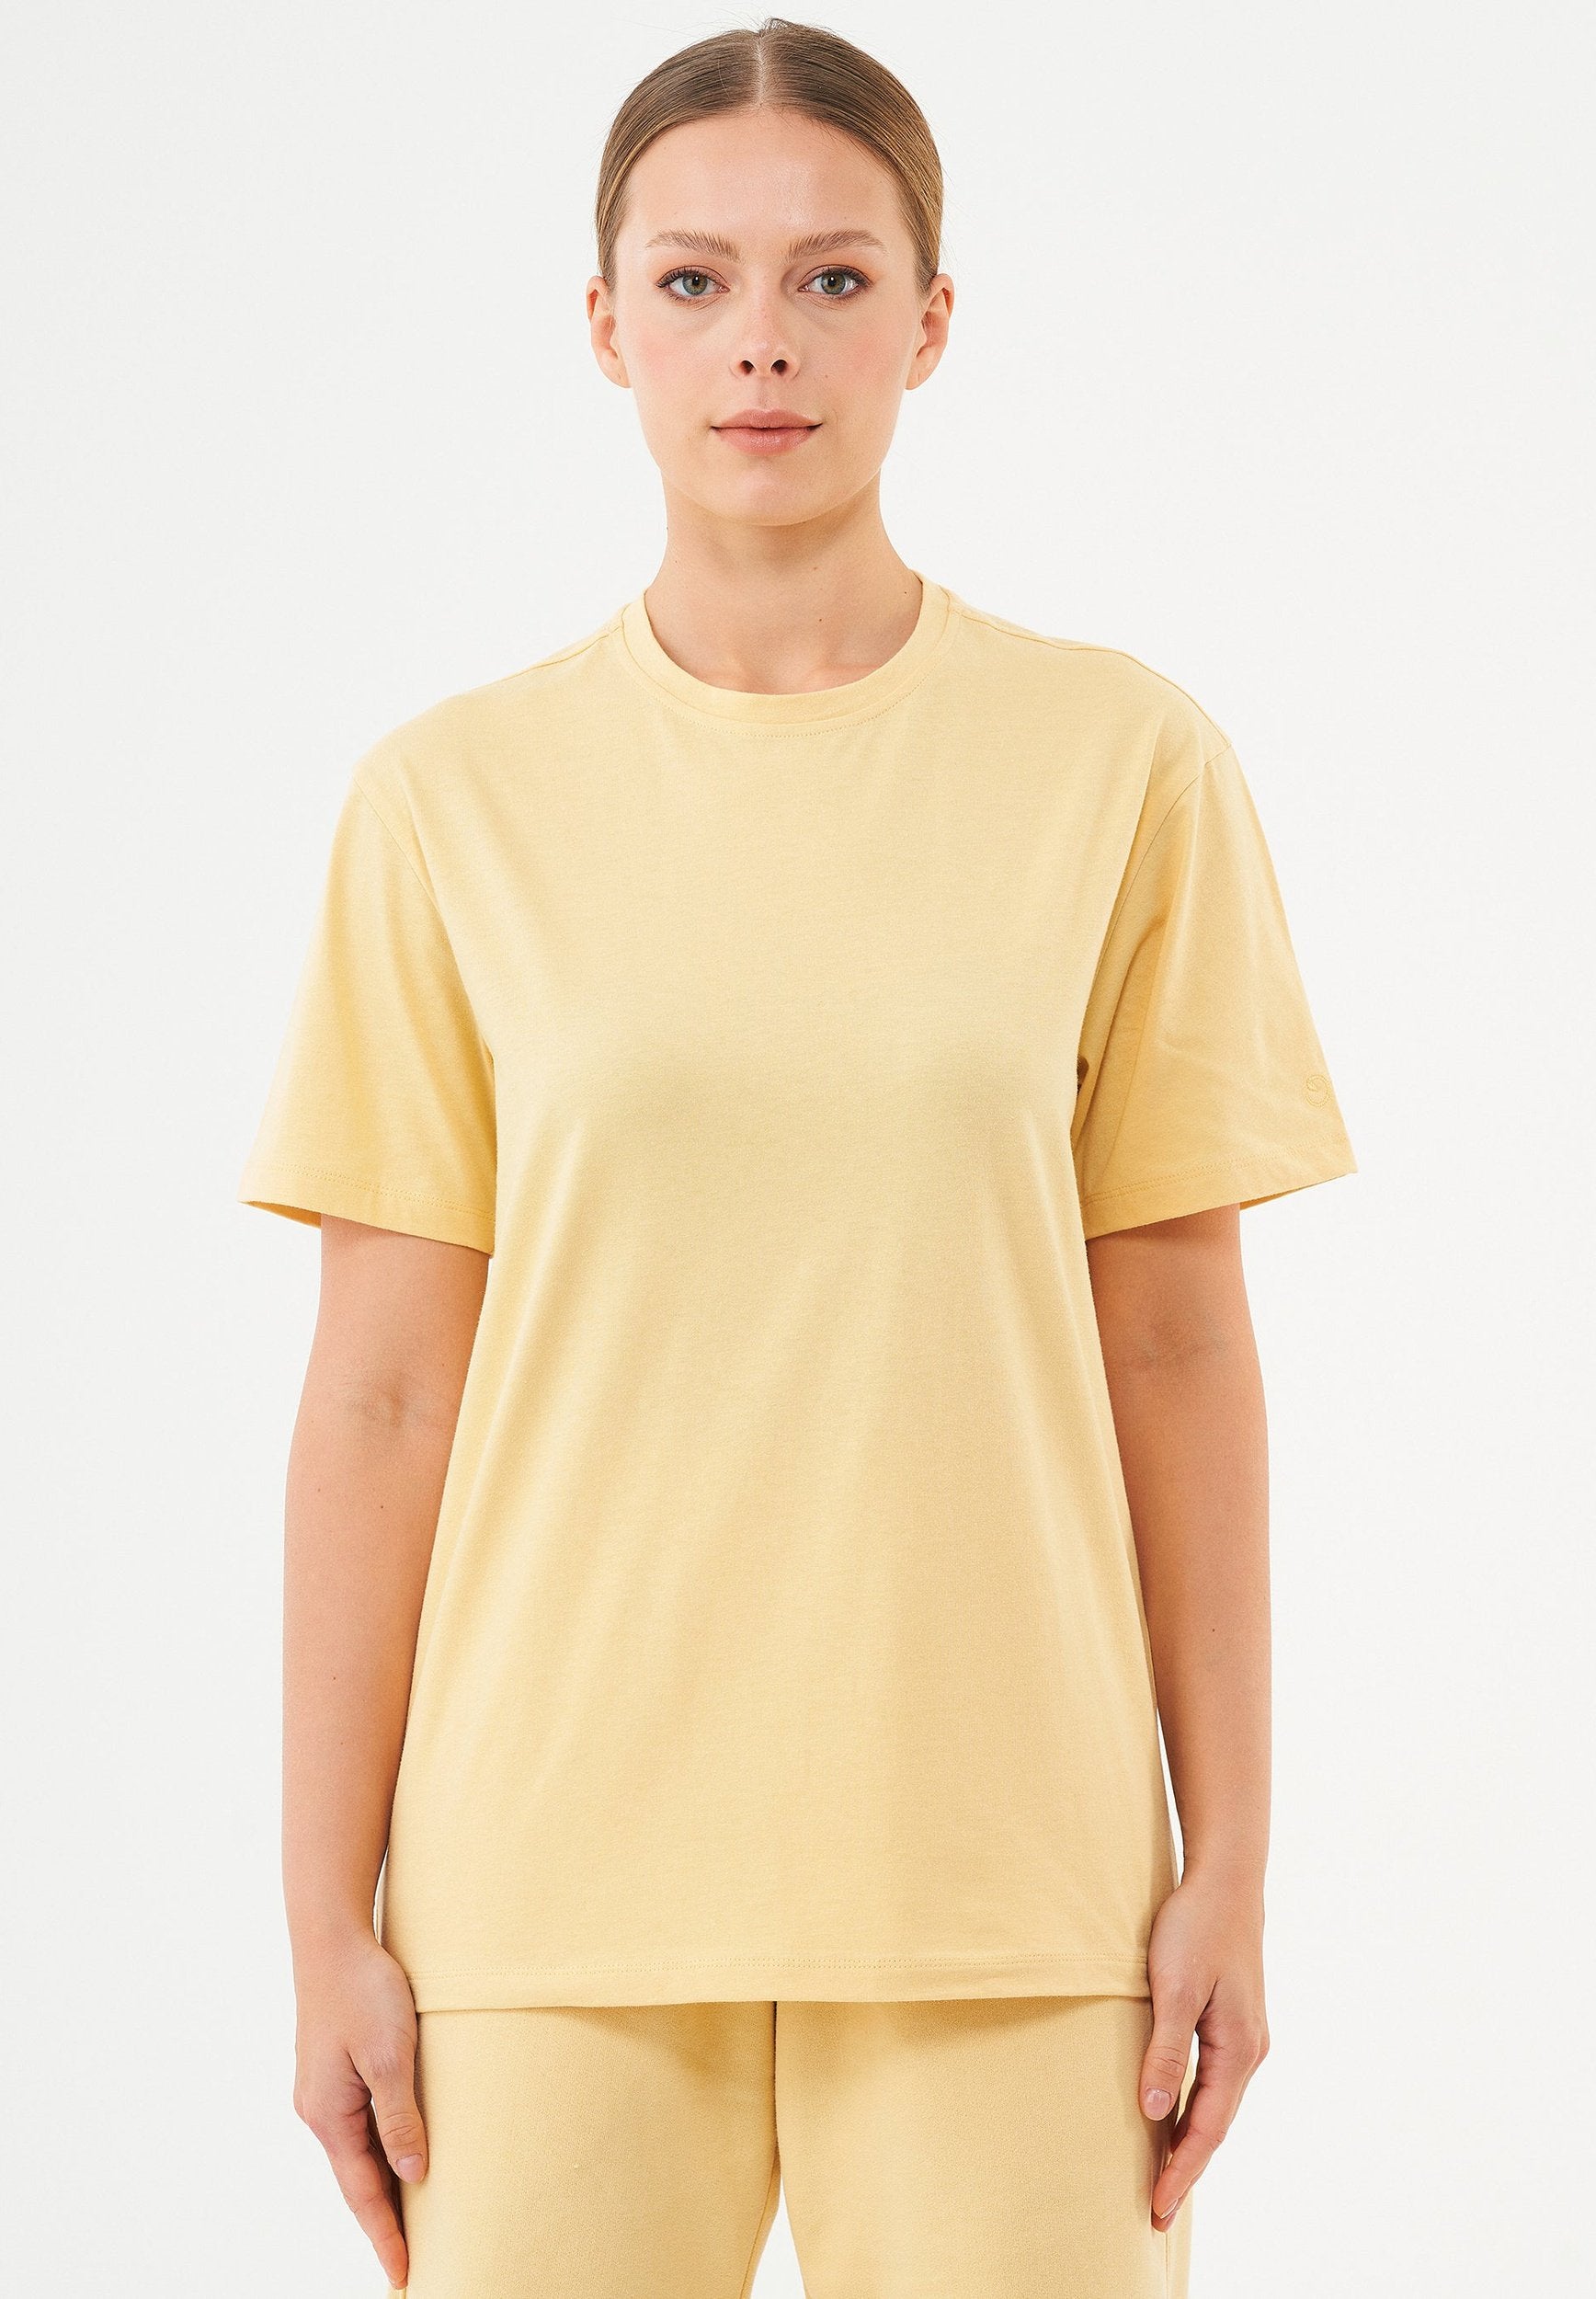 TILLO- Unisex Basic T-Shirt aus Bio-Baumwolle